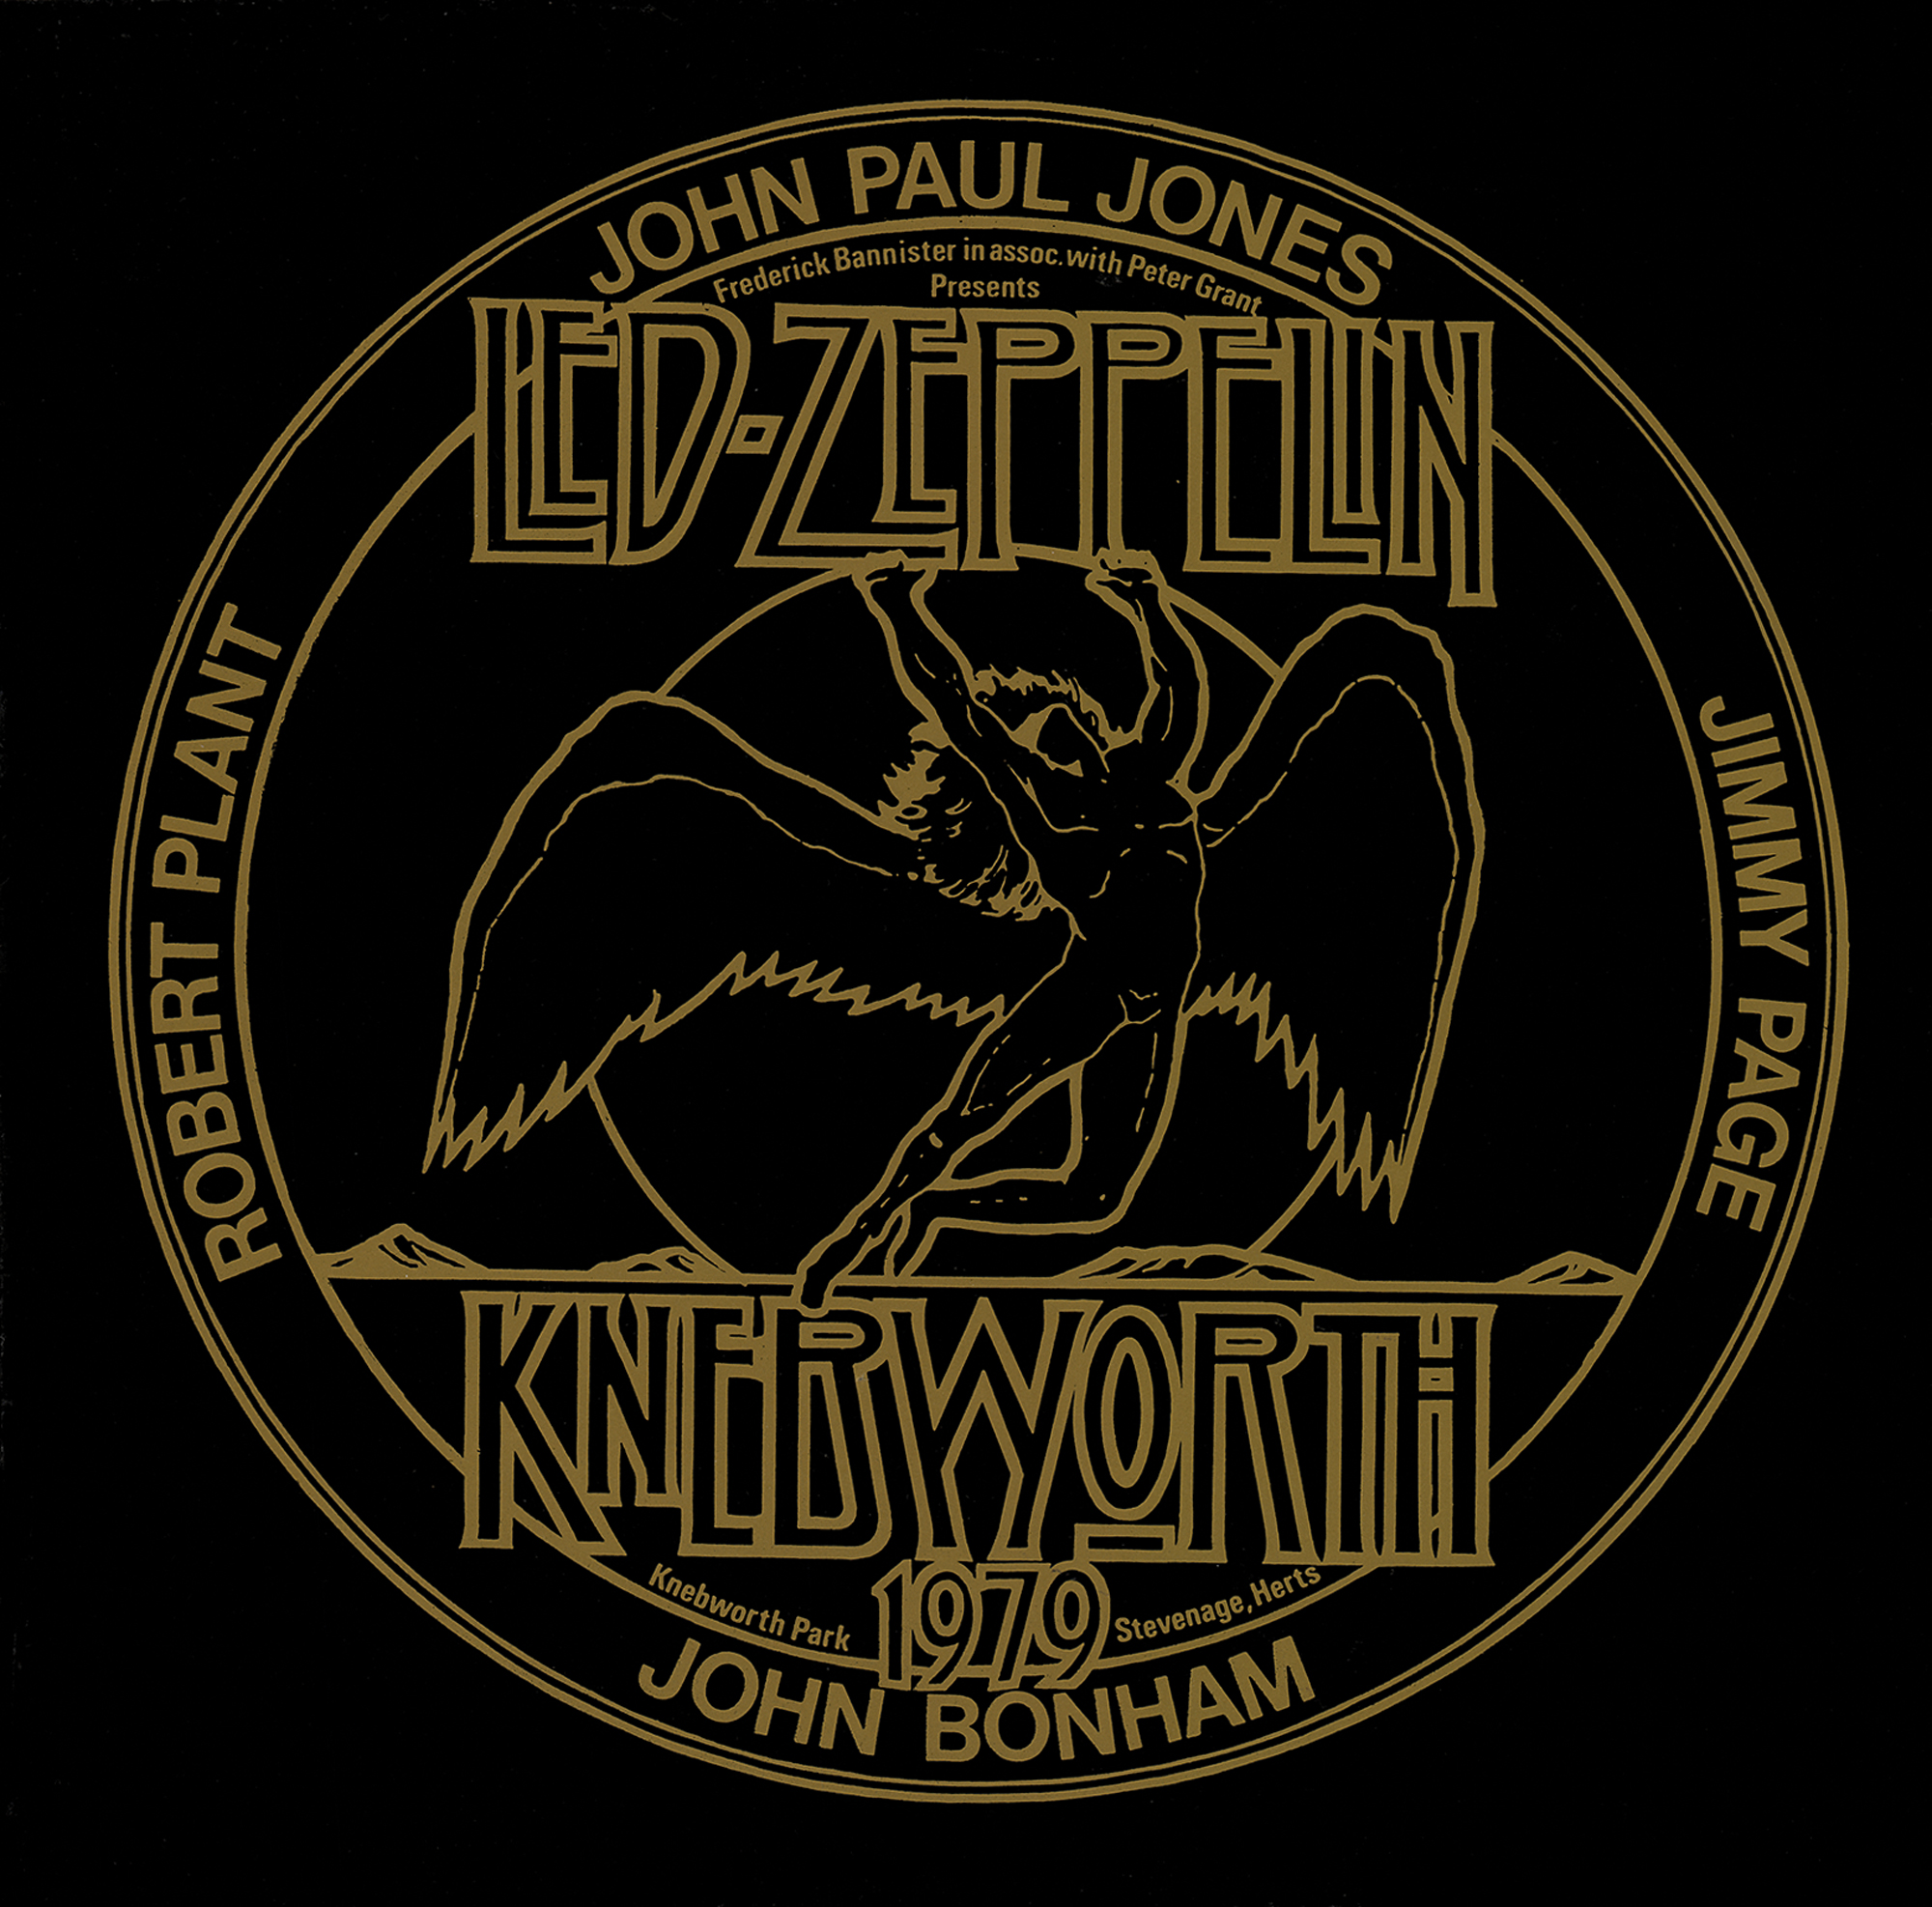 Lot #2142 Led Zeppelin 1979 Knebworth Festival Sticker